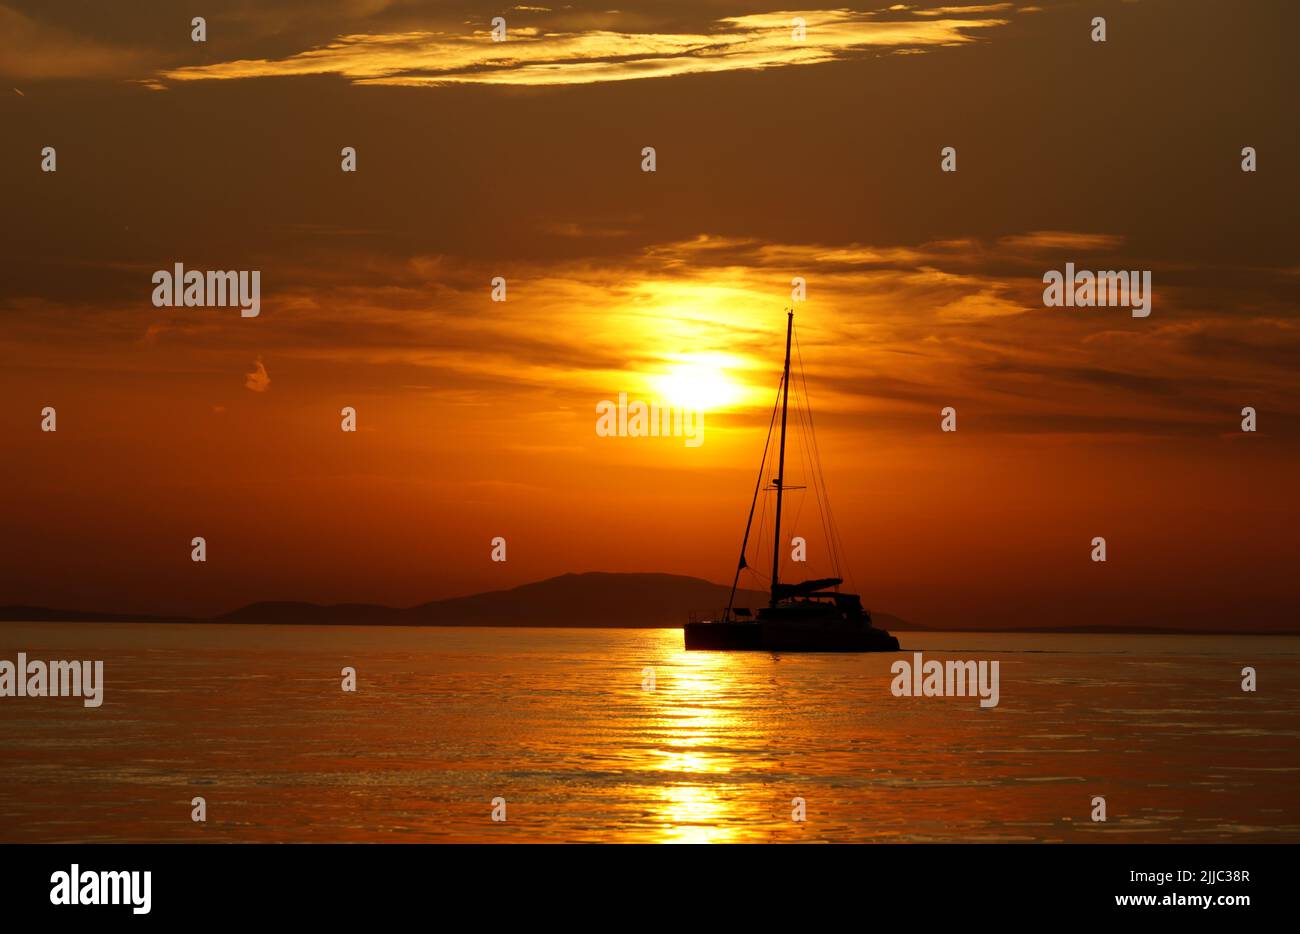 Silueta negra del yate durante la hora dorada del verano en el paisaje marino de colores intensos Foto de stock